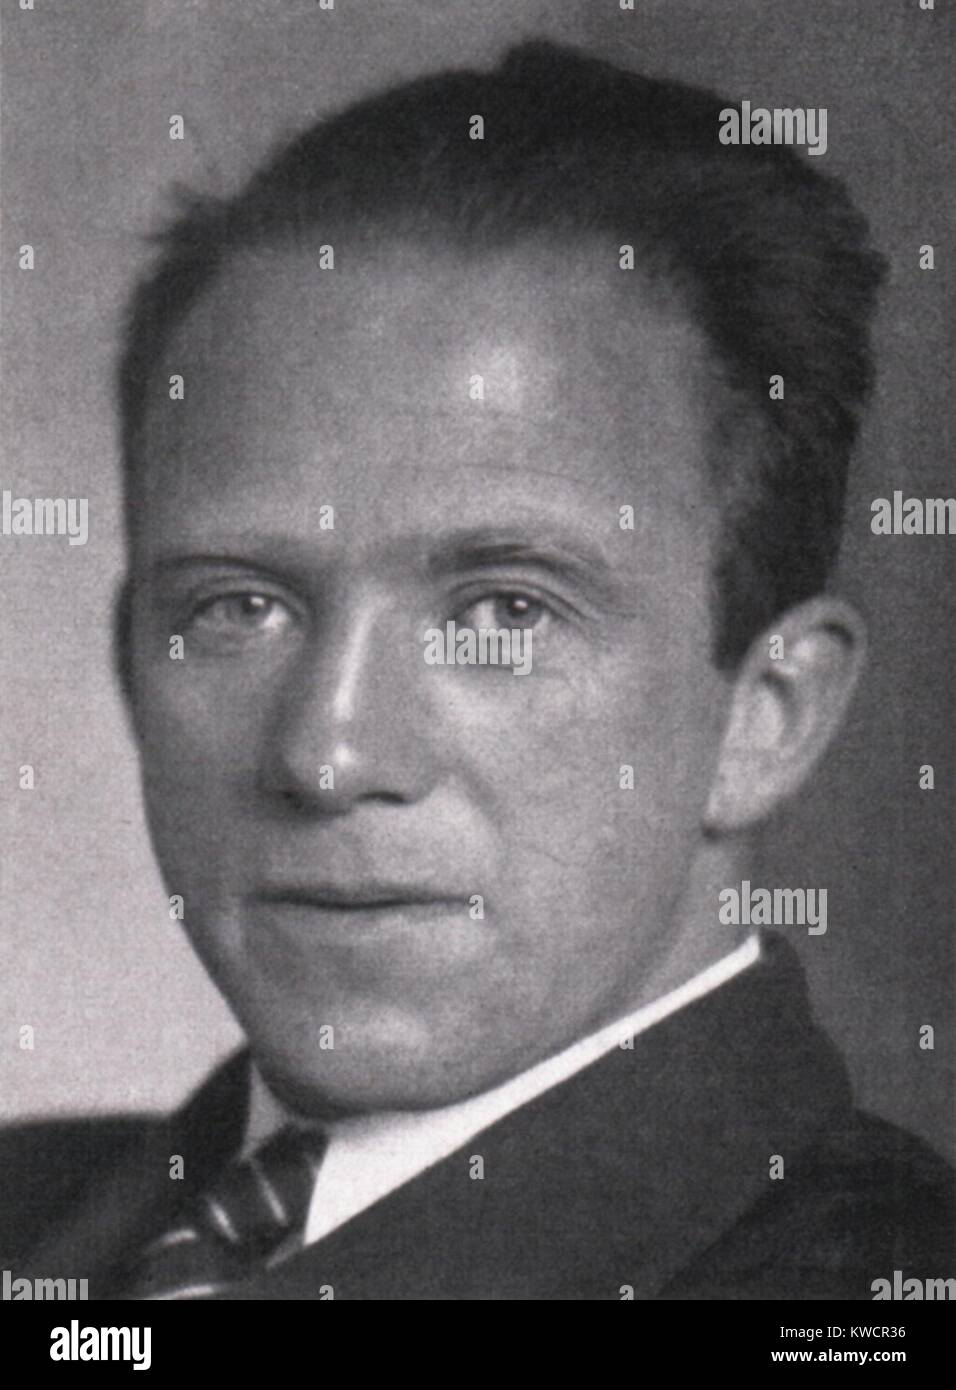 Werner Heisenberg, fisico teorico, si è aggiudicato il premio 1932 Nobel. Egli ha contribuito allo sviluppo della meccanica quantistica e il principio di incertezza. Foto di Max Lohrich. - (BSLOC 2015 1 76) Foto Stock